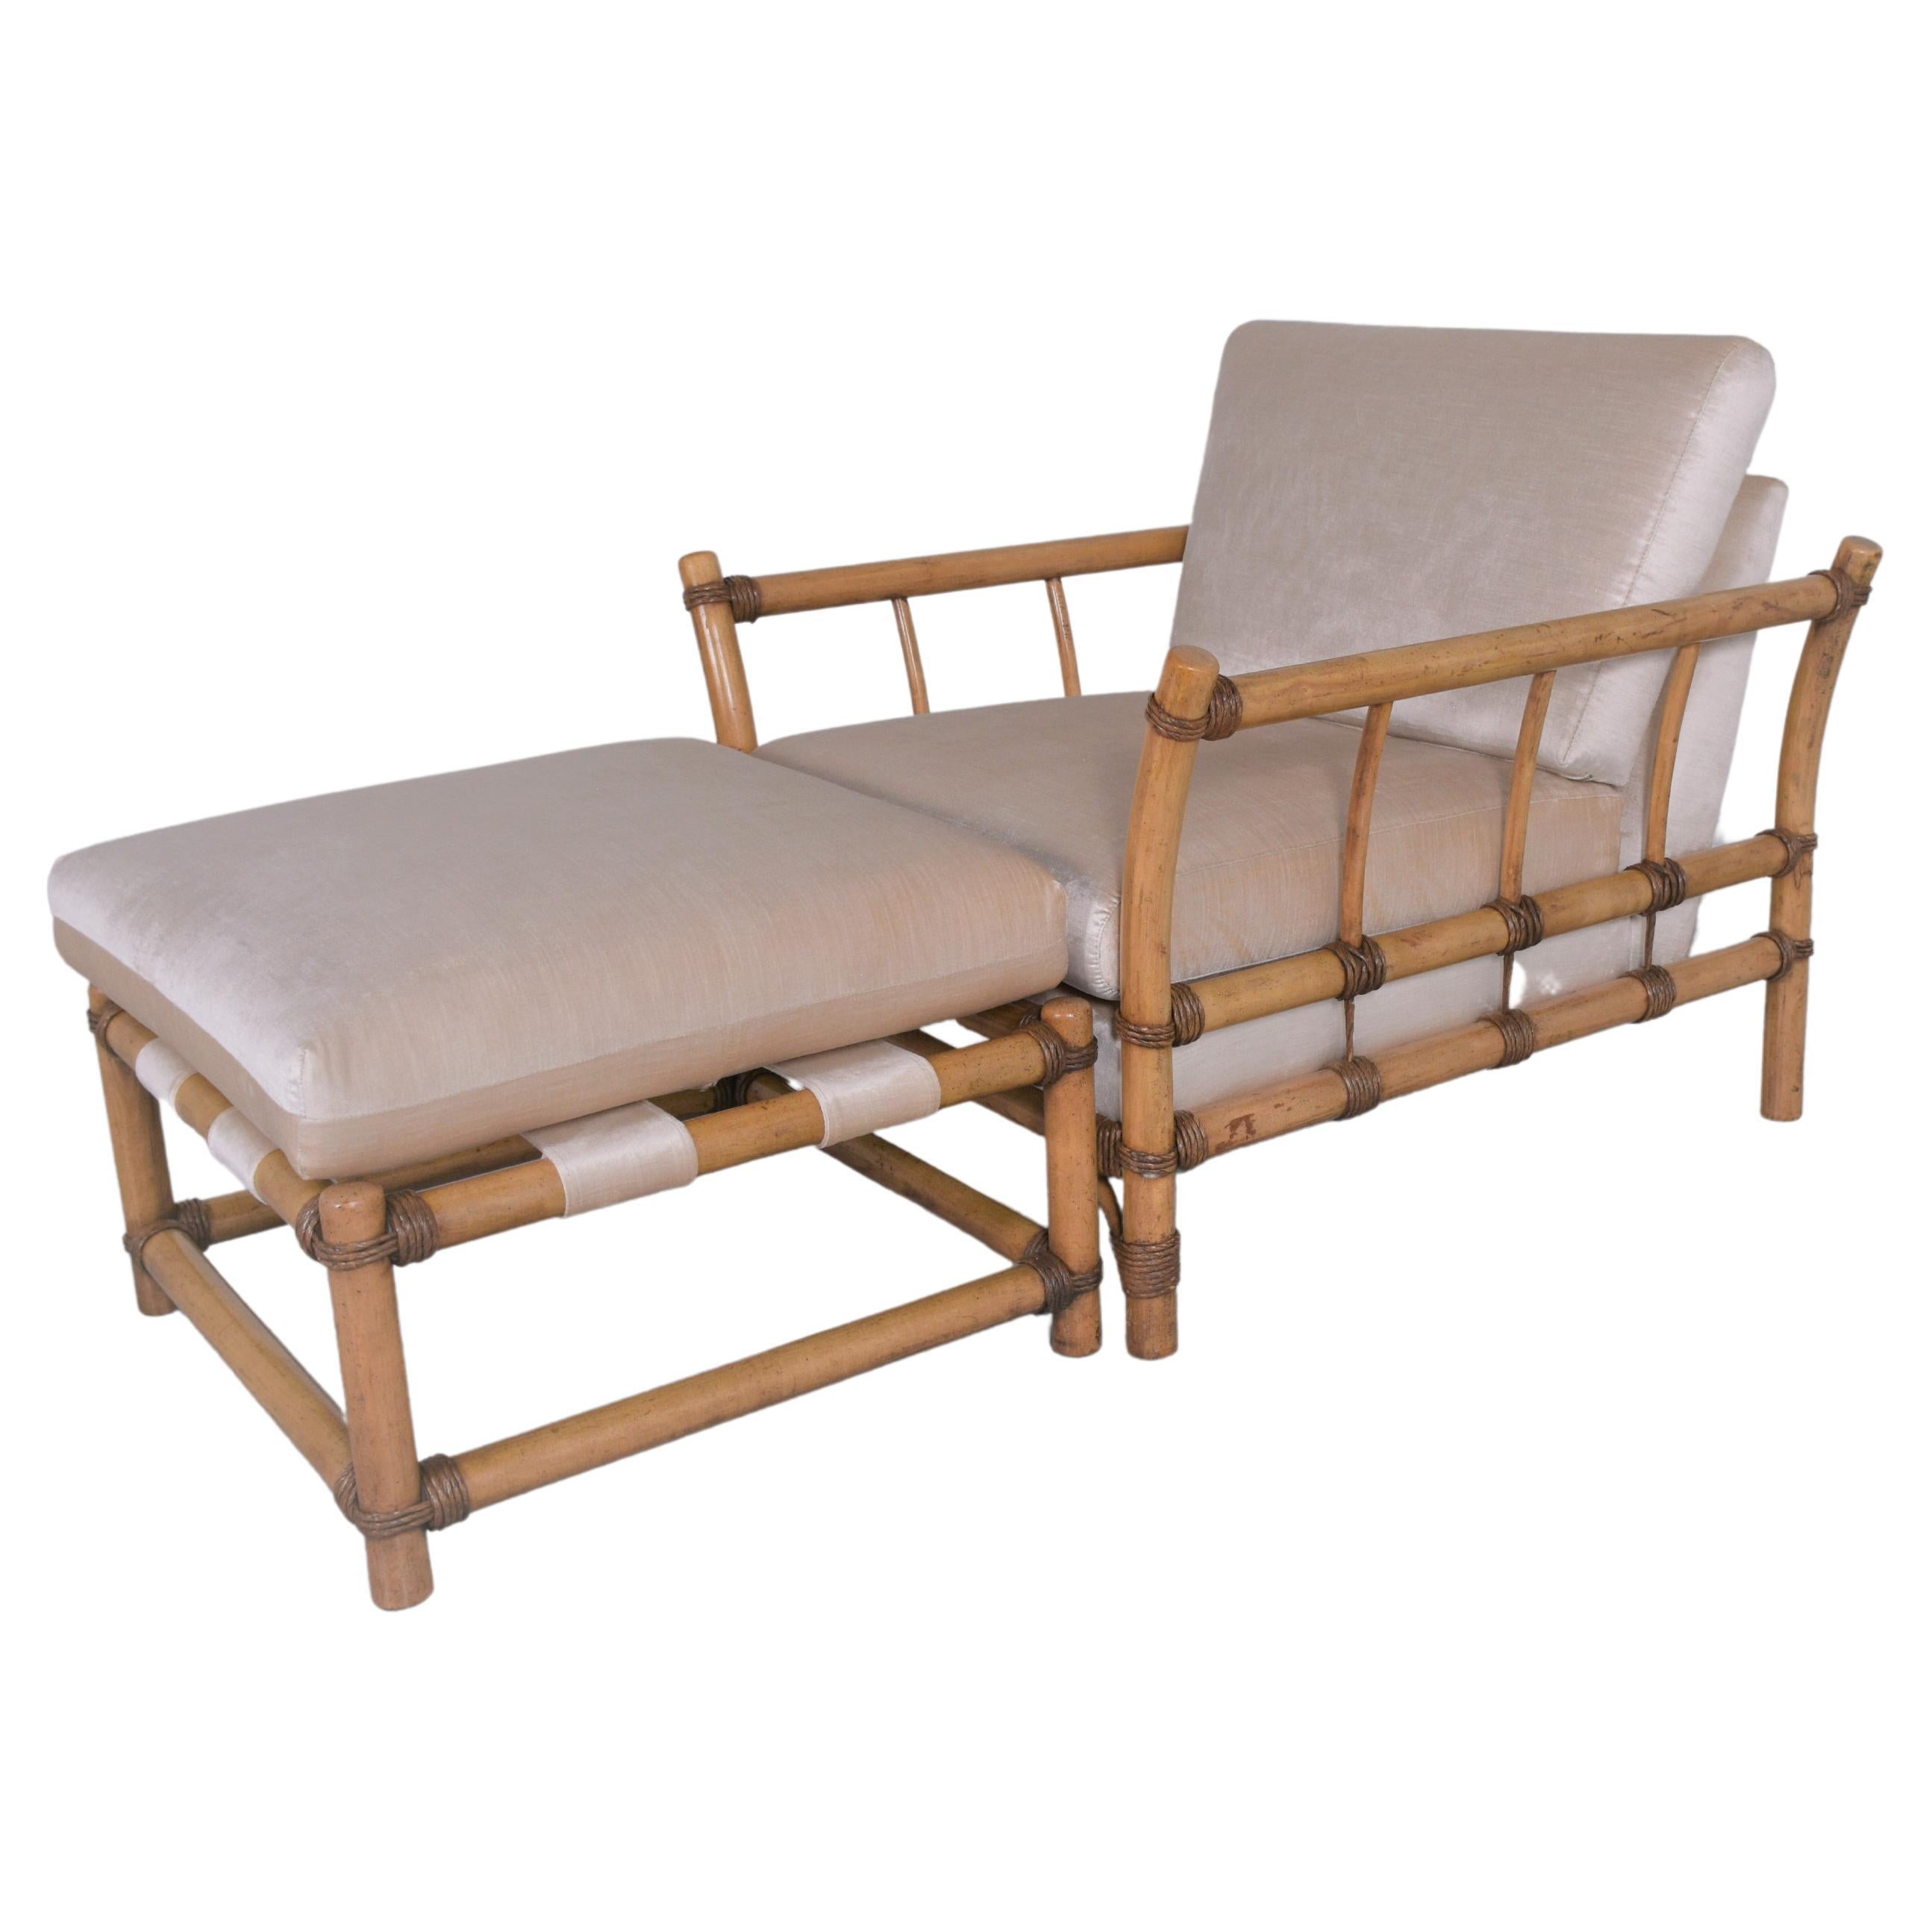 Entdecken Sie ein Stück Retro-Luxus mit unserer Chaiselongue aus Bambus im Stil der 1970er-Jahre, die von unserem hauseigenen Team von professionellen Handwerkern sorgfältig restauriert wurde. Diese Chaiselongue ist ein Musterbeispiel für